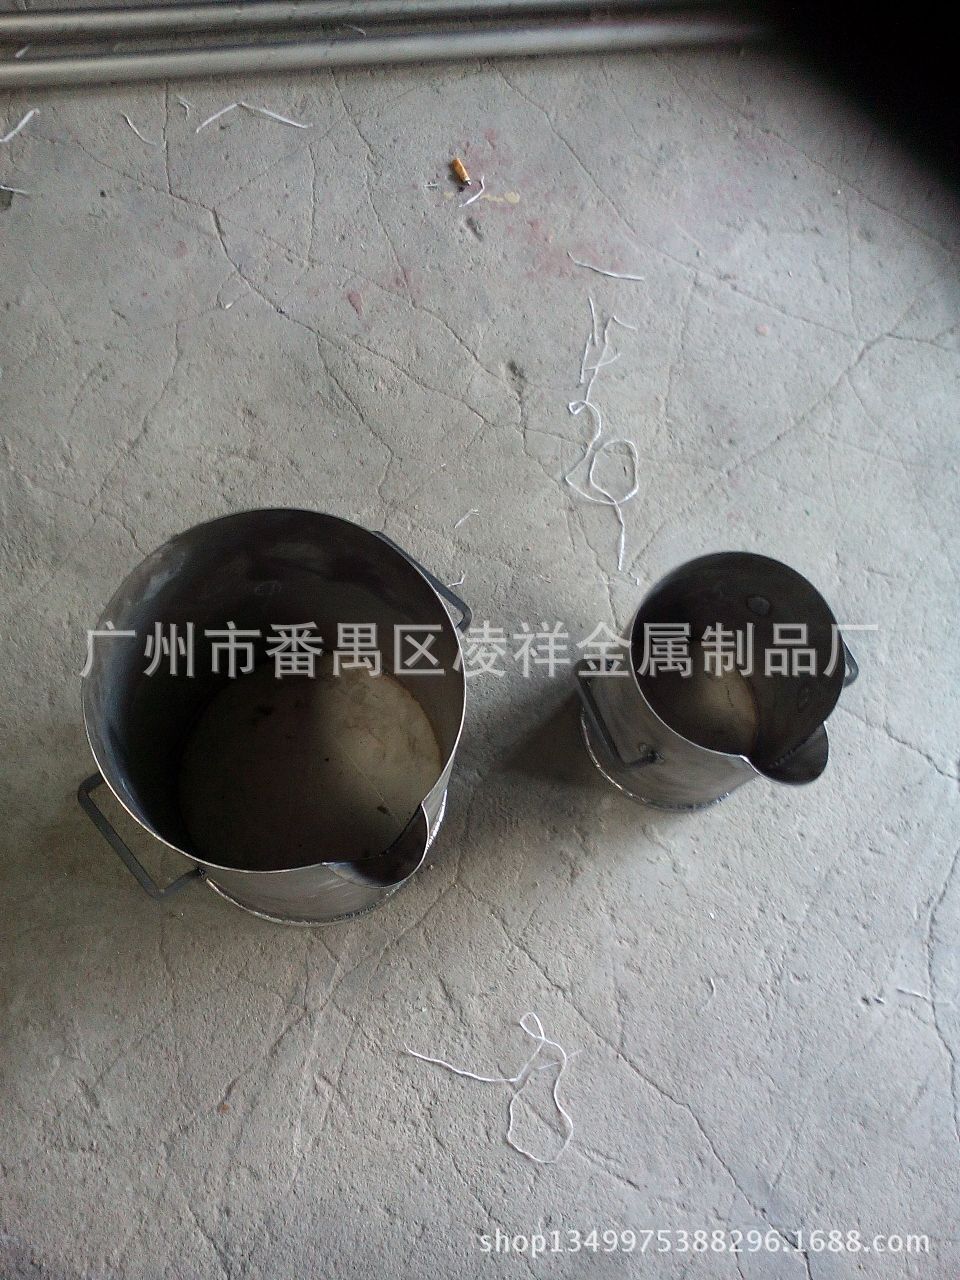 电子垃圾提炼专用化金钛煲加工炼金钛桶贵金属专用优质钛桶批发